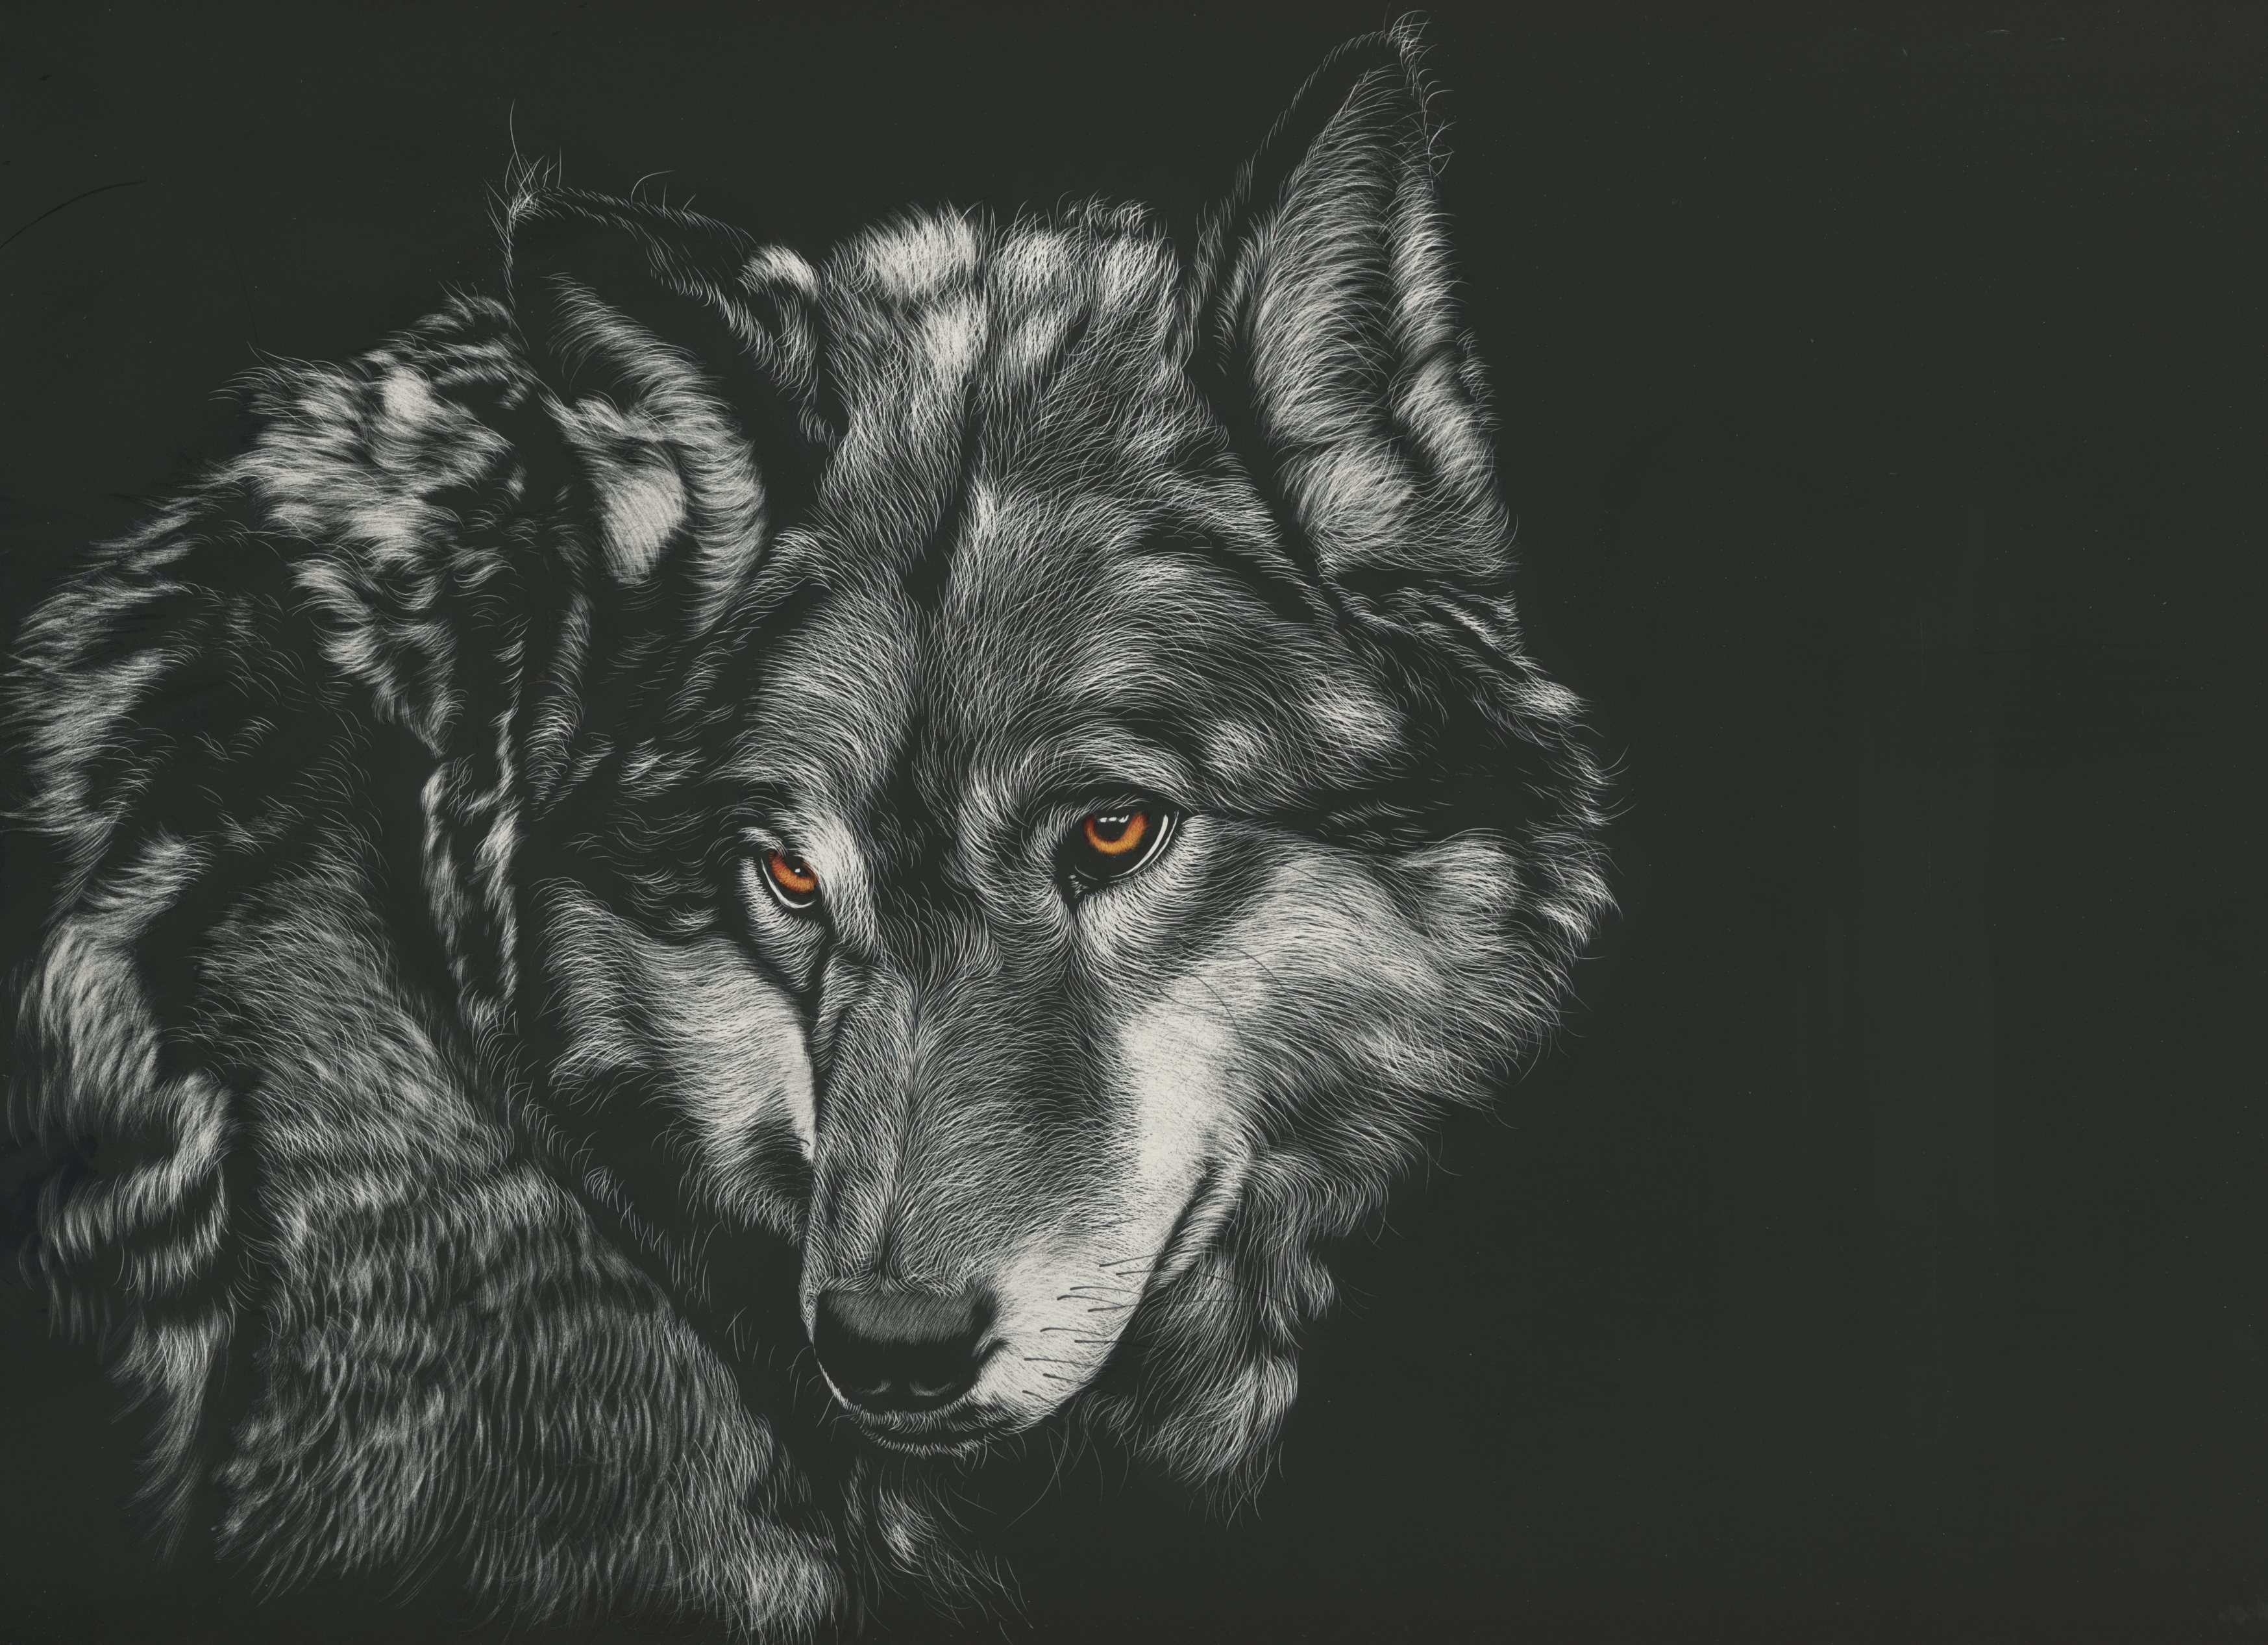 baixar 배경 화면 hd,늑대,야생 동물,그림,늑대 개,검정색과 흰색